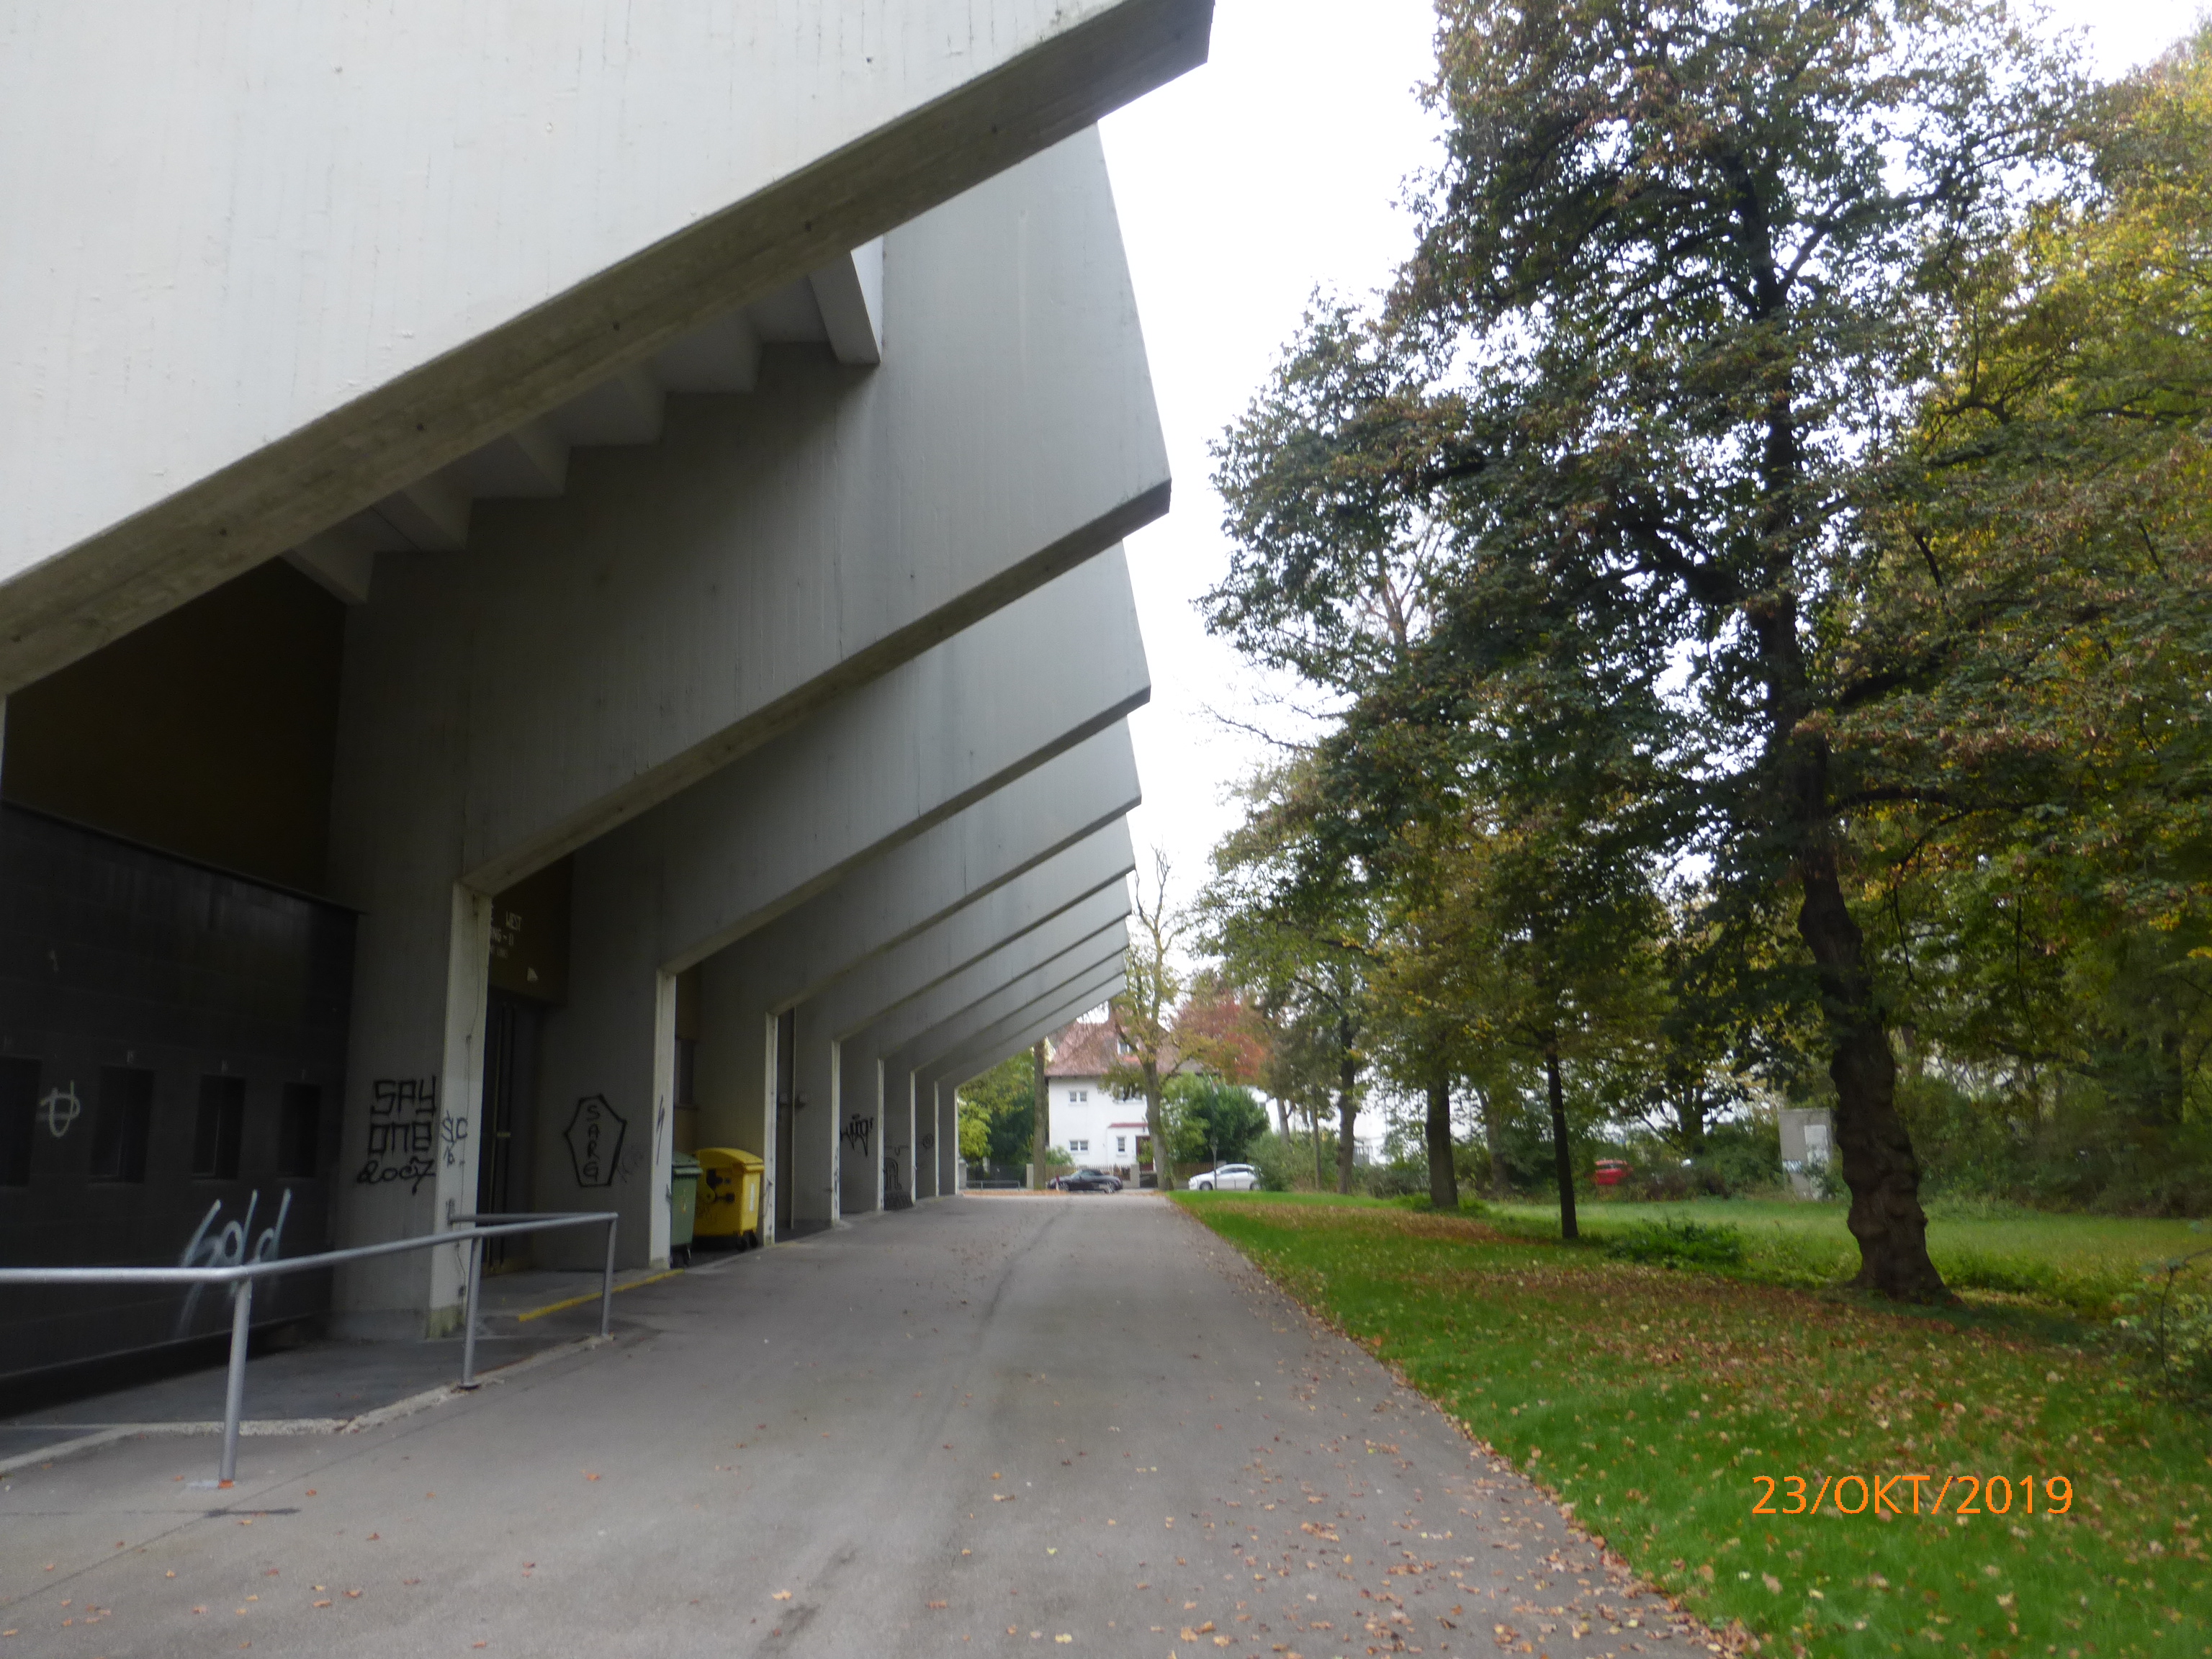 Das Bild zeigt eine Sporthalle, vor der ein Fußweg verläuft. Auf der rechten Seite befindet sich eine Wiese mit Bäumen.